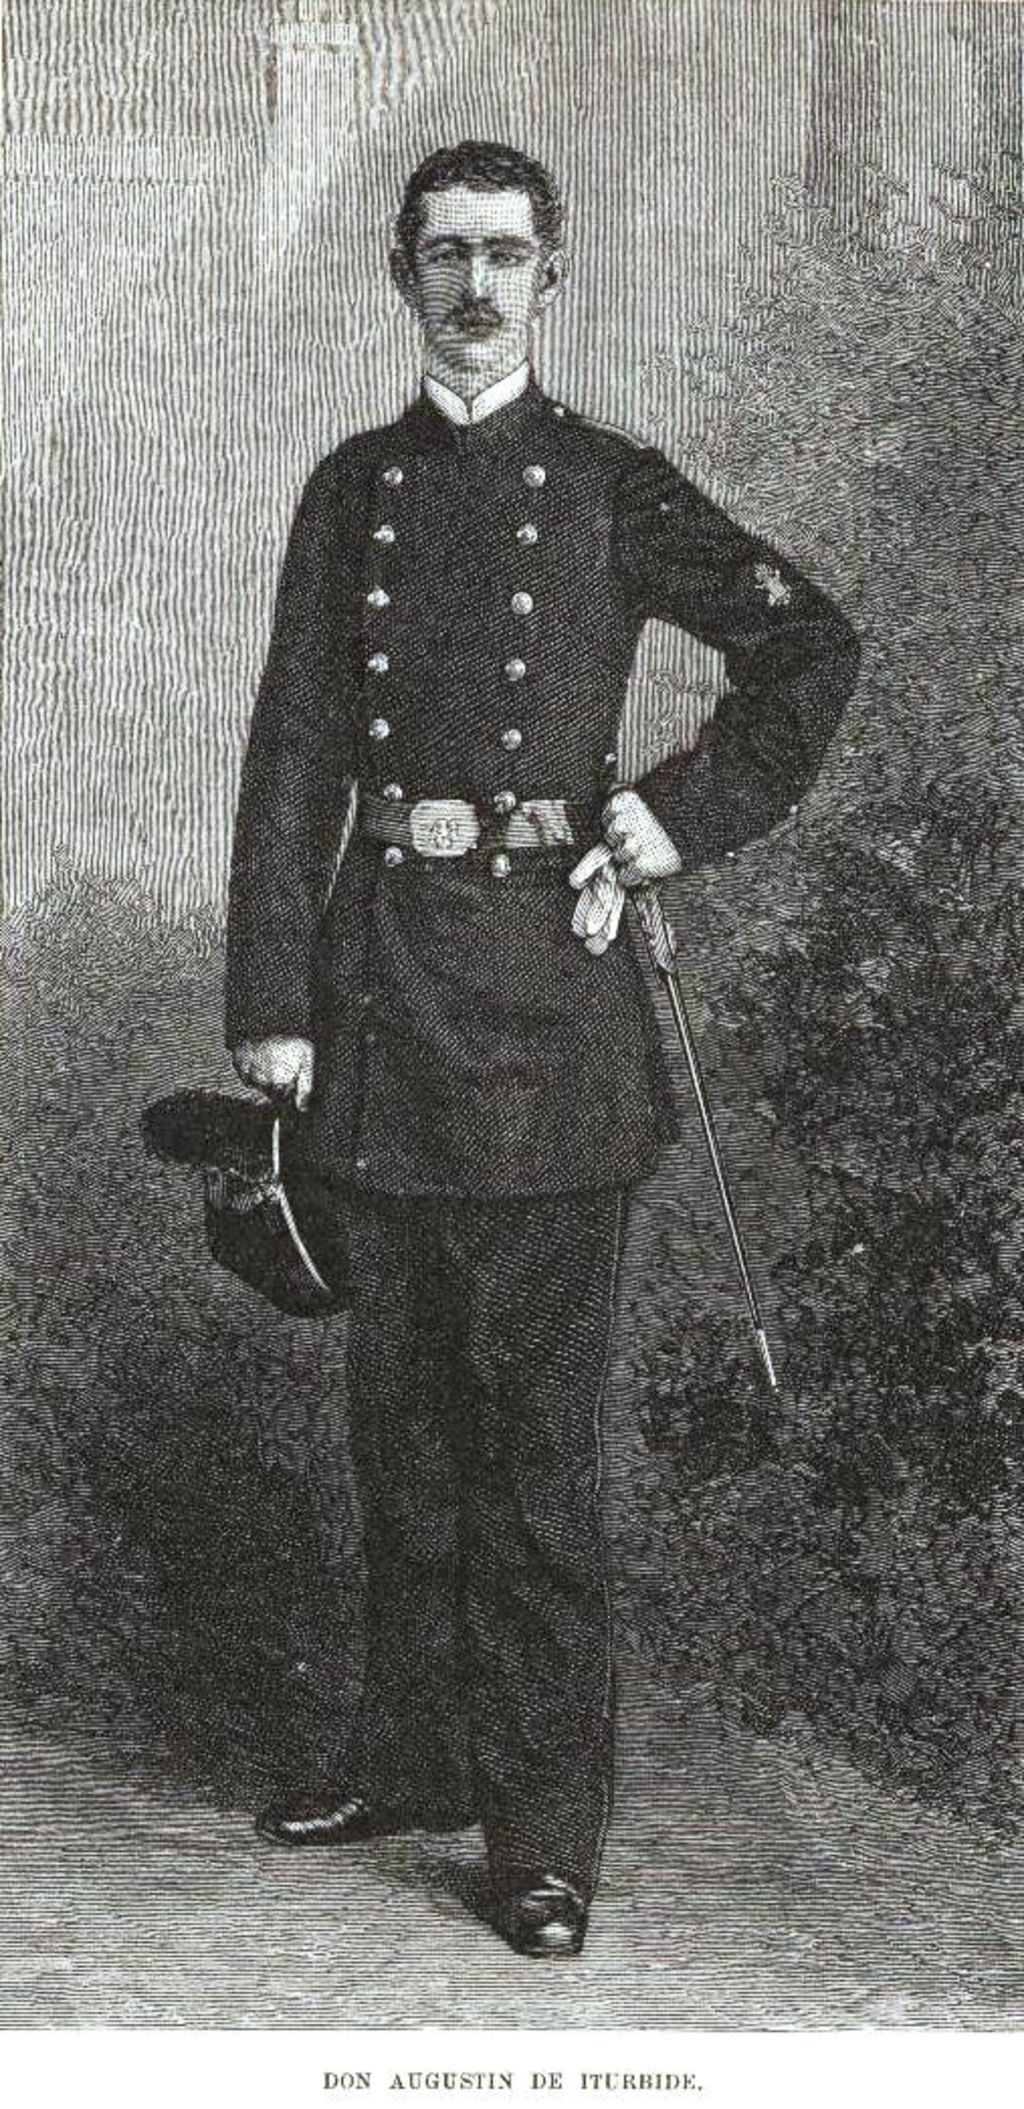 

Su Alteza Imperial, el Príncipe de Iturbide, como alférez del Ejército Mexicano en 1883.
